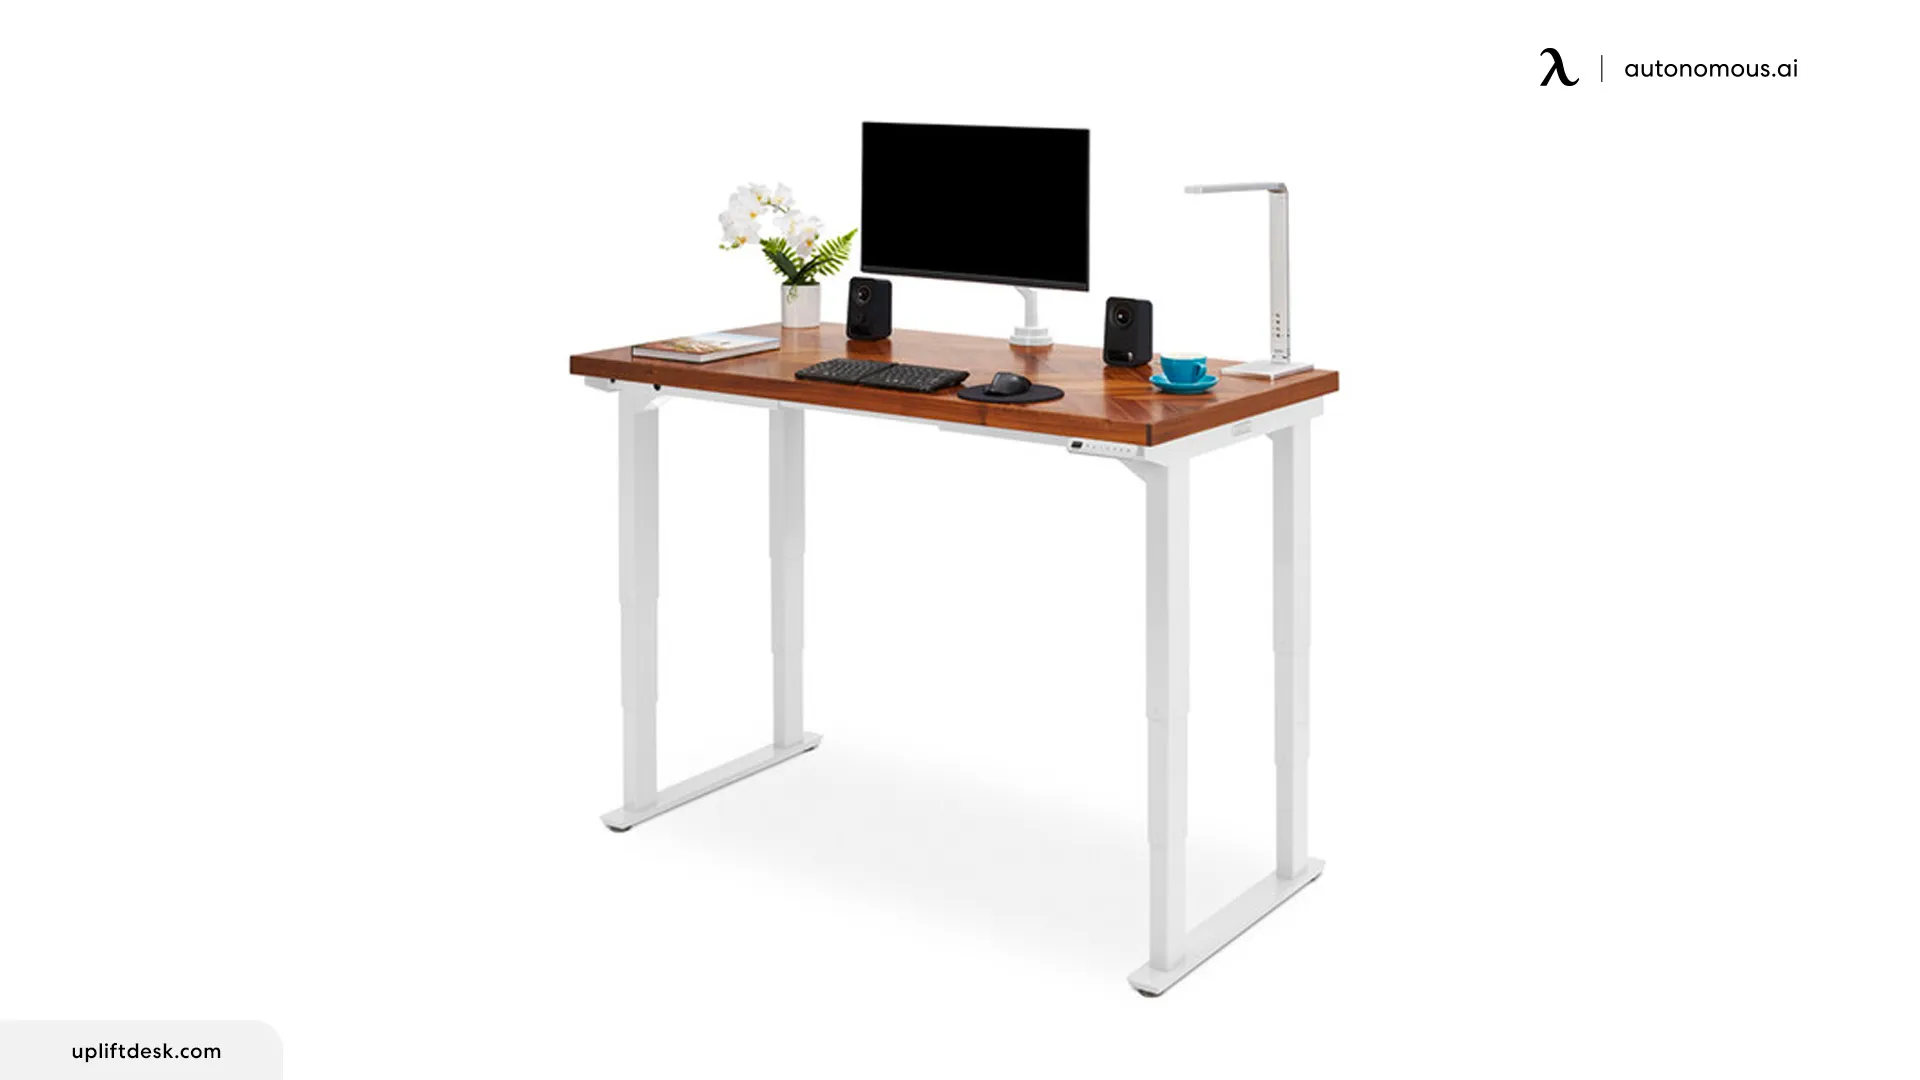 UPLIFT 4-Leg Standing Desk